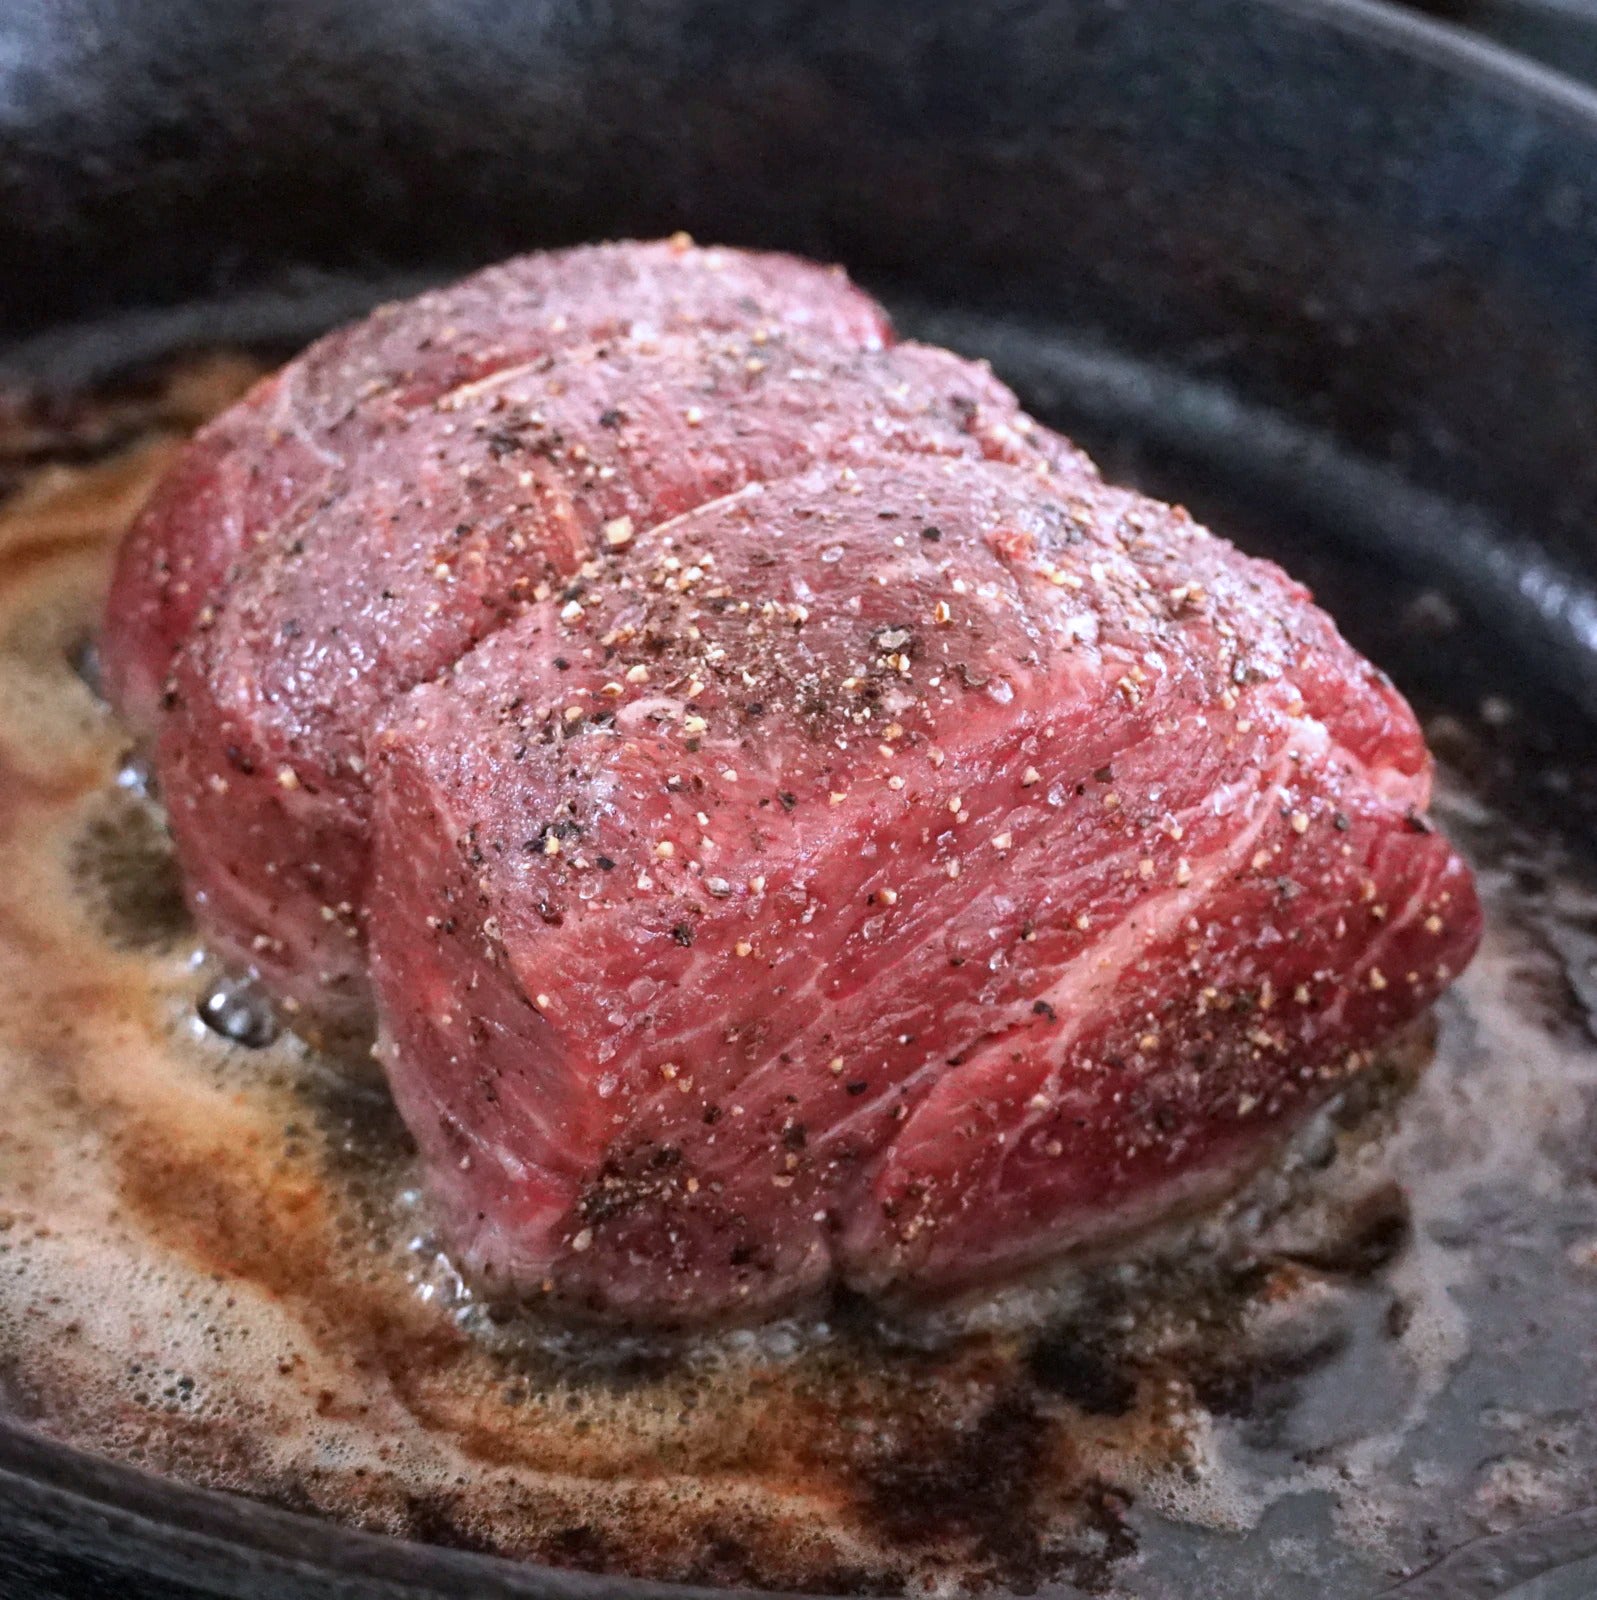 グラスフェッドビーフ プレミアム 牛肉 テンダーロイン ヒレ 塊肉 ロースト 牧草牛 (1kg) ホライズンファームズ